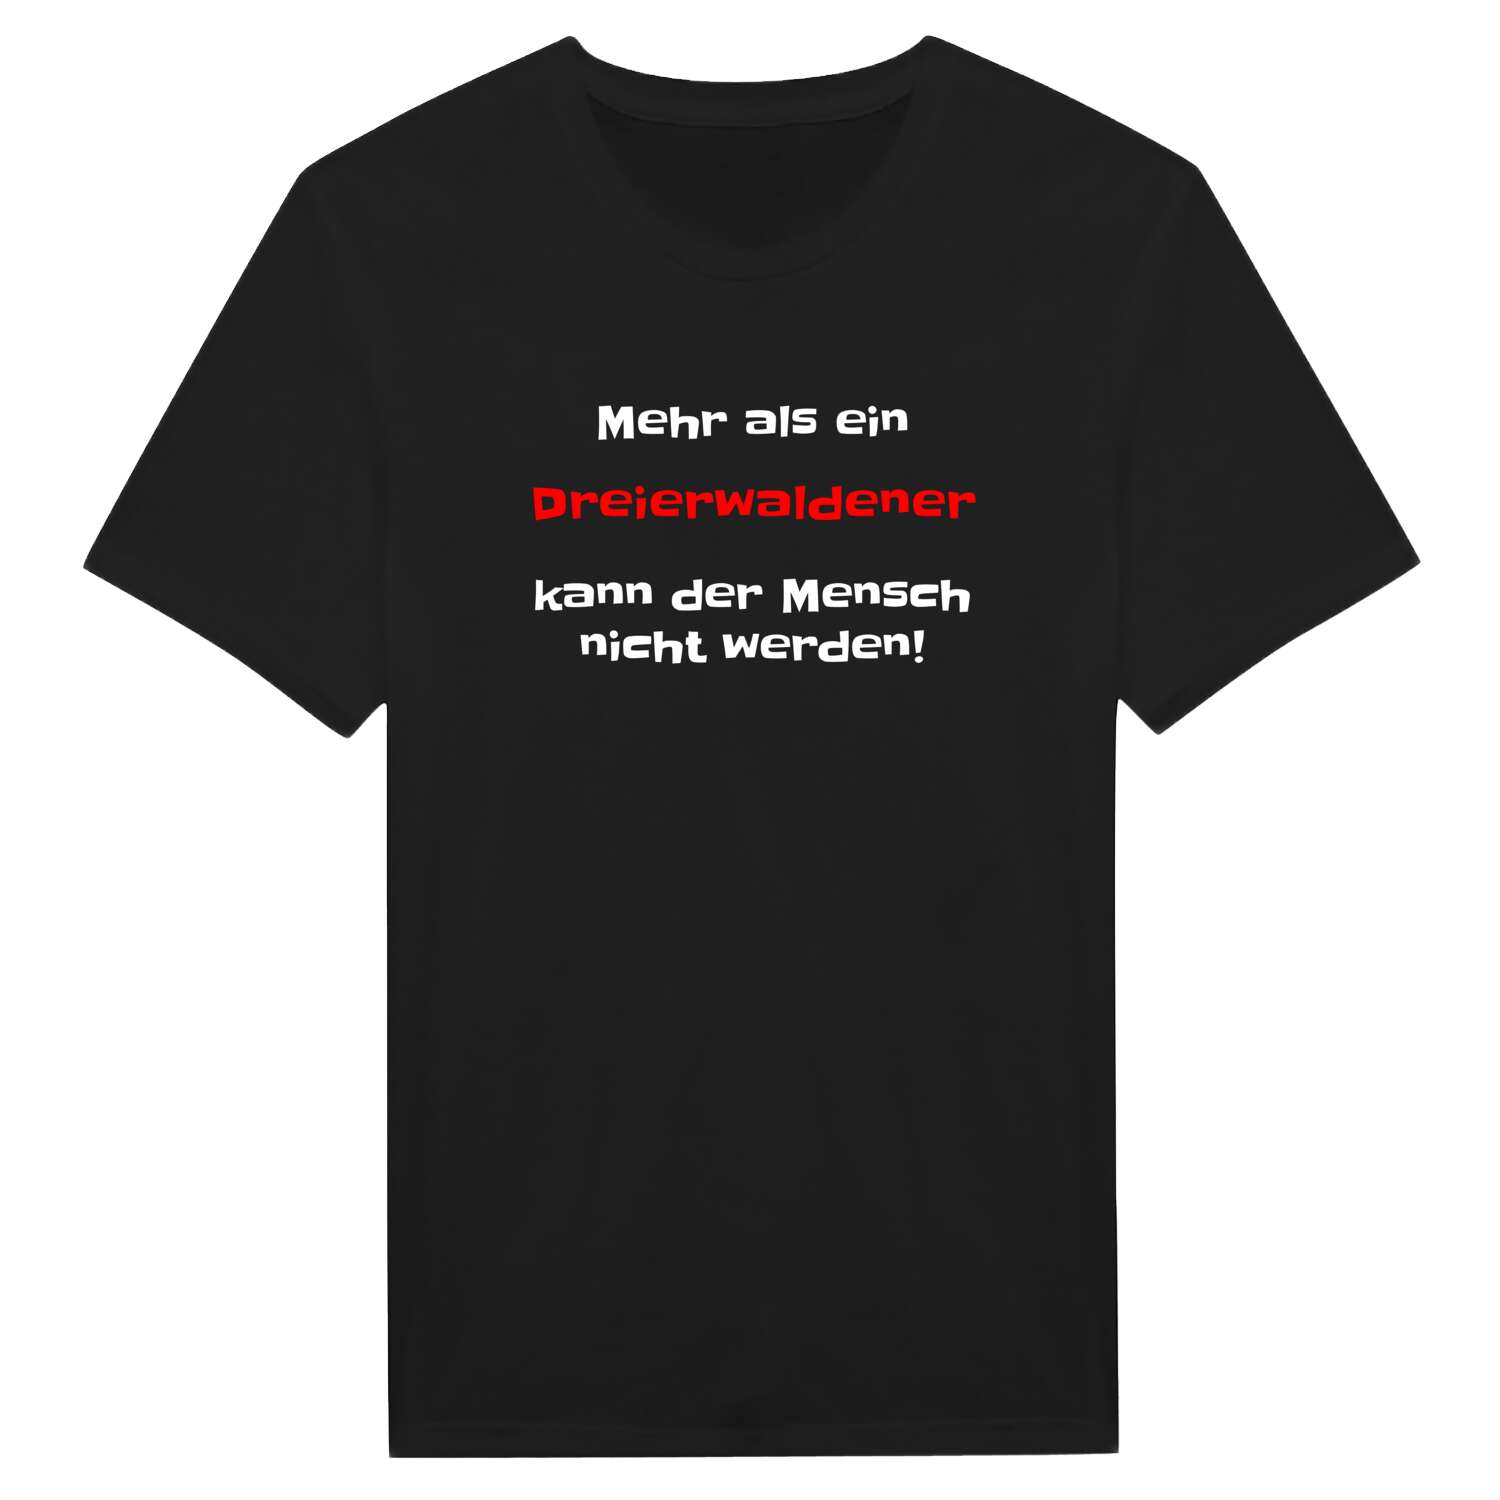 Dreierwalde T-Shirt »Mehr als ein«